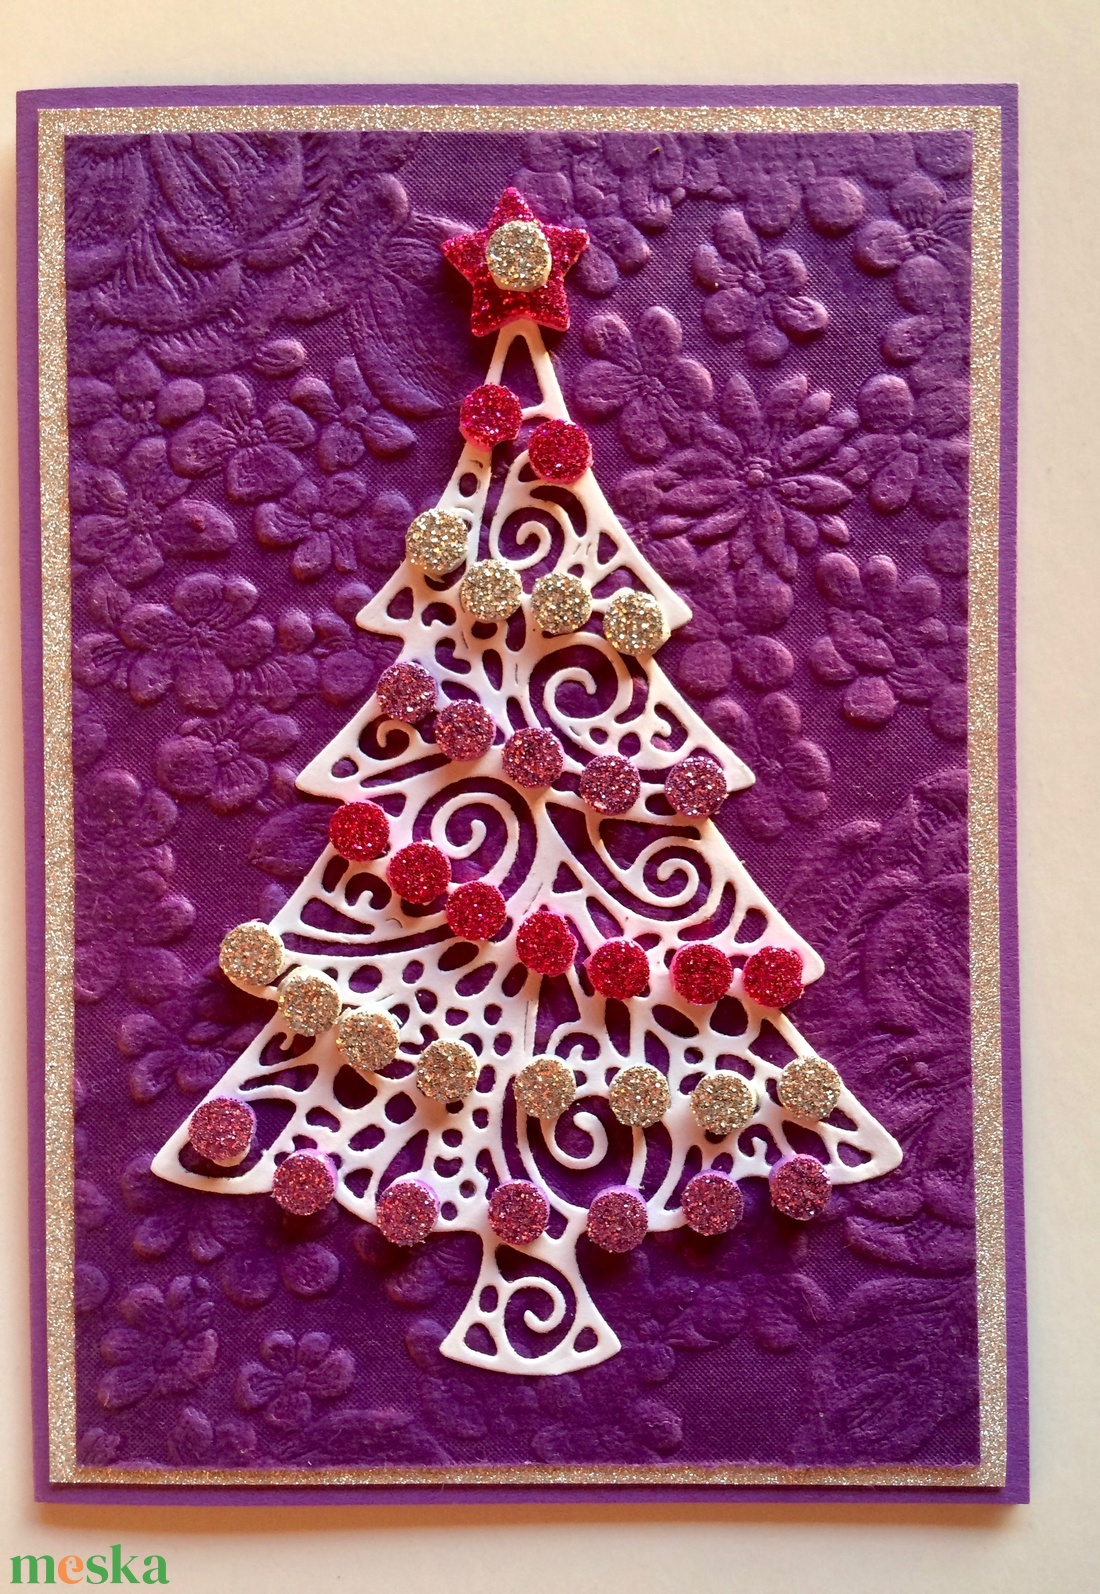 Lila karácsony karácsonyi képeslap,Karácsony, Advent üdvözlet, karácsonyfa, fenyőfa, lila, ezüst, rózsaszín, dísz - karácsony - karácsonyi ajándékozás - karácsonyi képeslap, üdvözlőlap, ajándékkísérő - Meska.hu